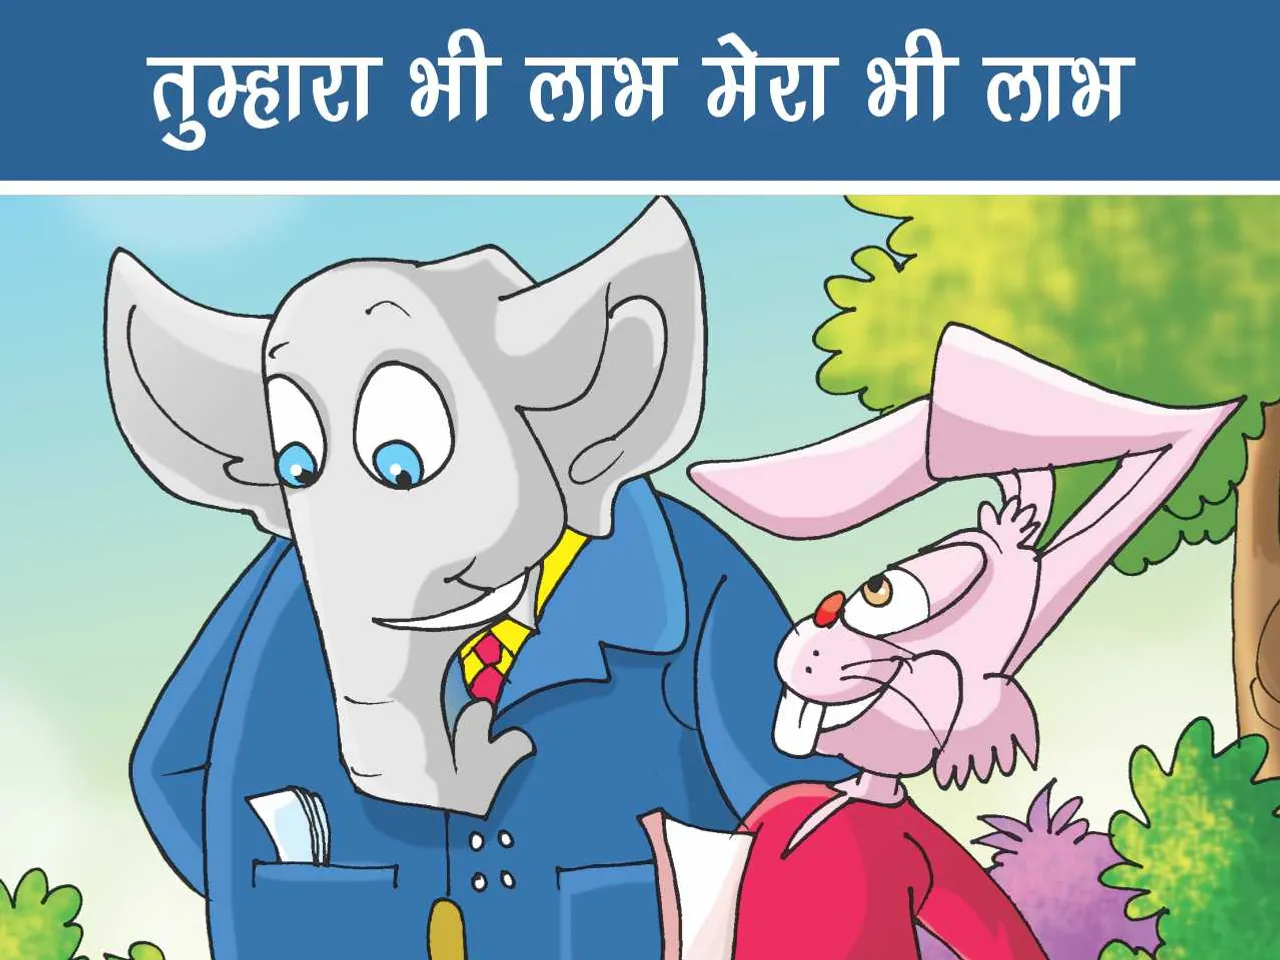 Elephant and rabbit cartoon story